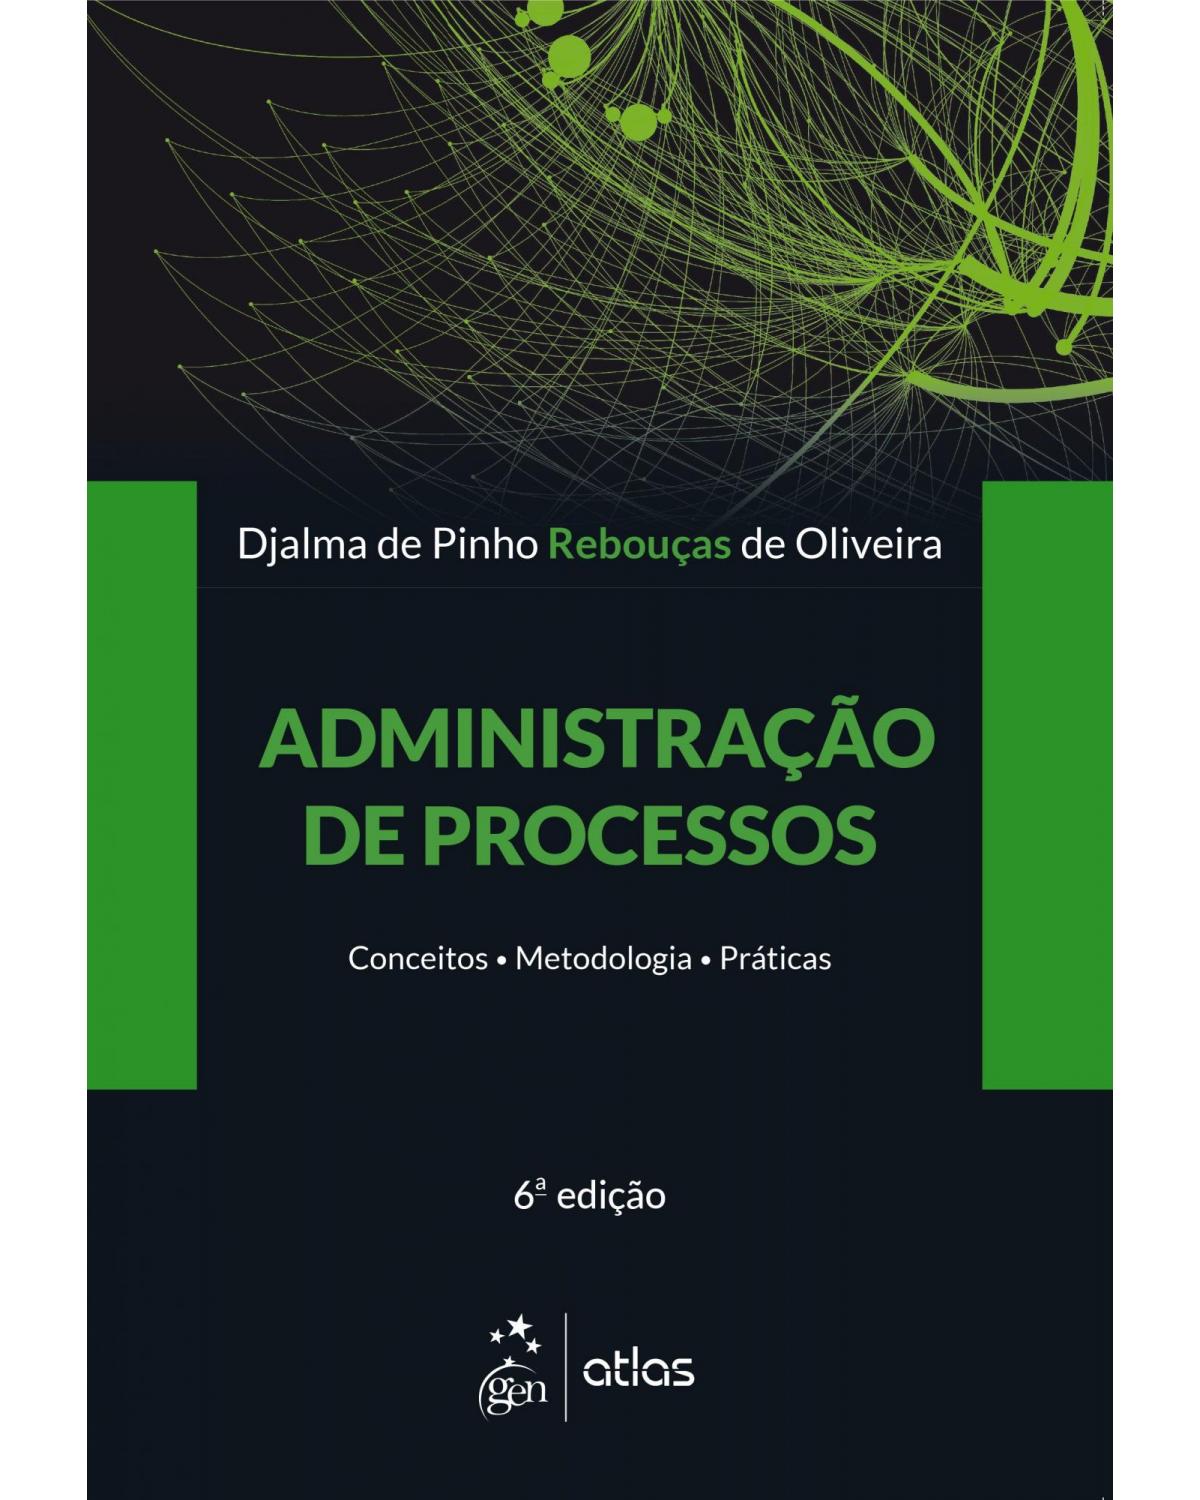 Administração de processos - conceitos, metodologias, práticas - 6ª Edição | 2019